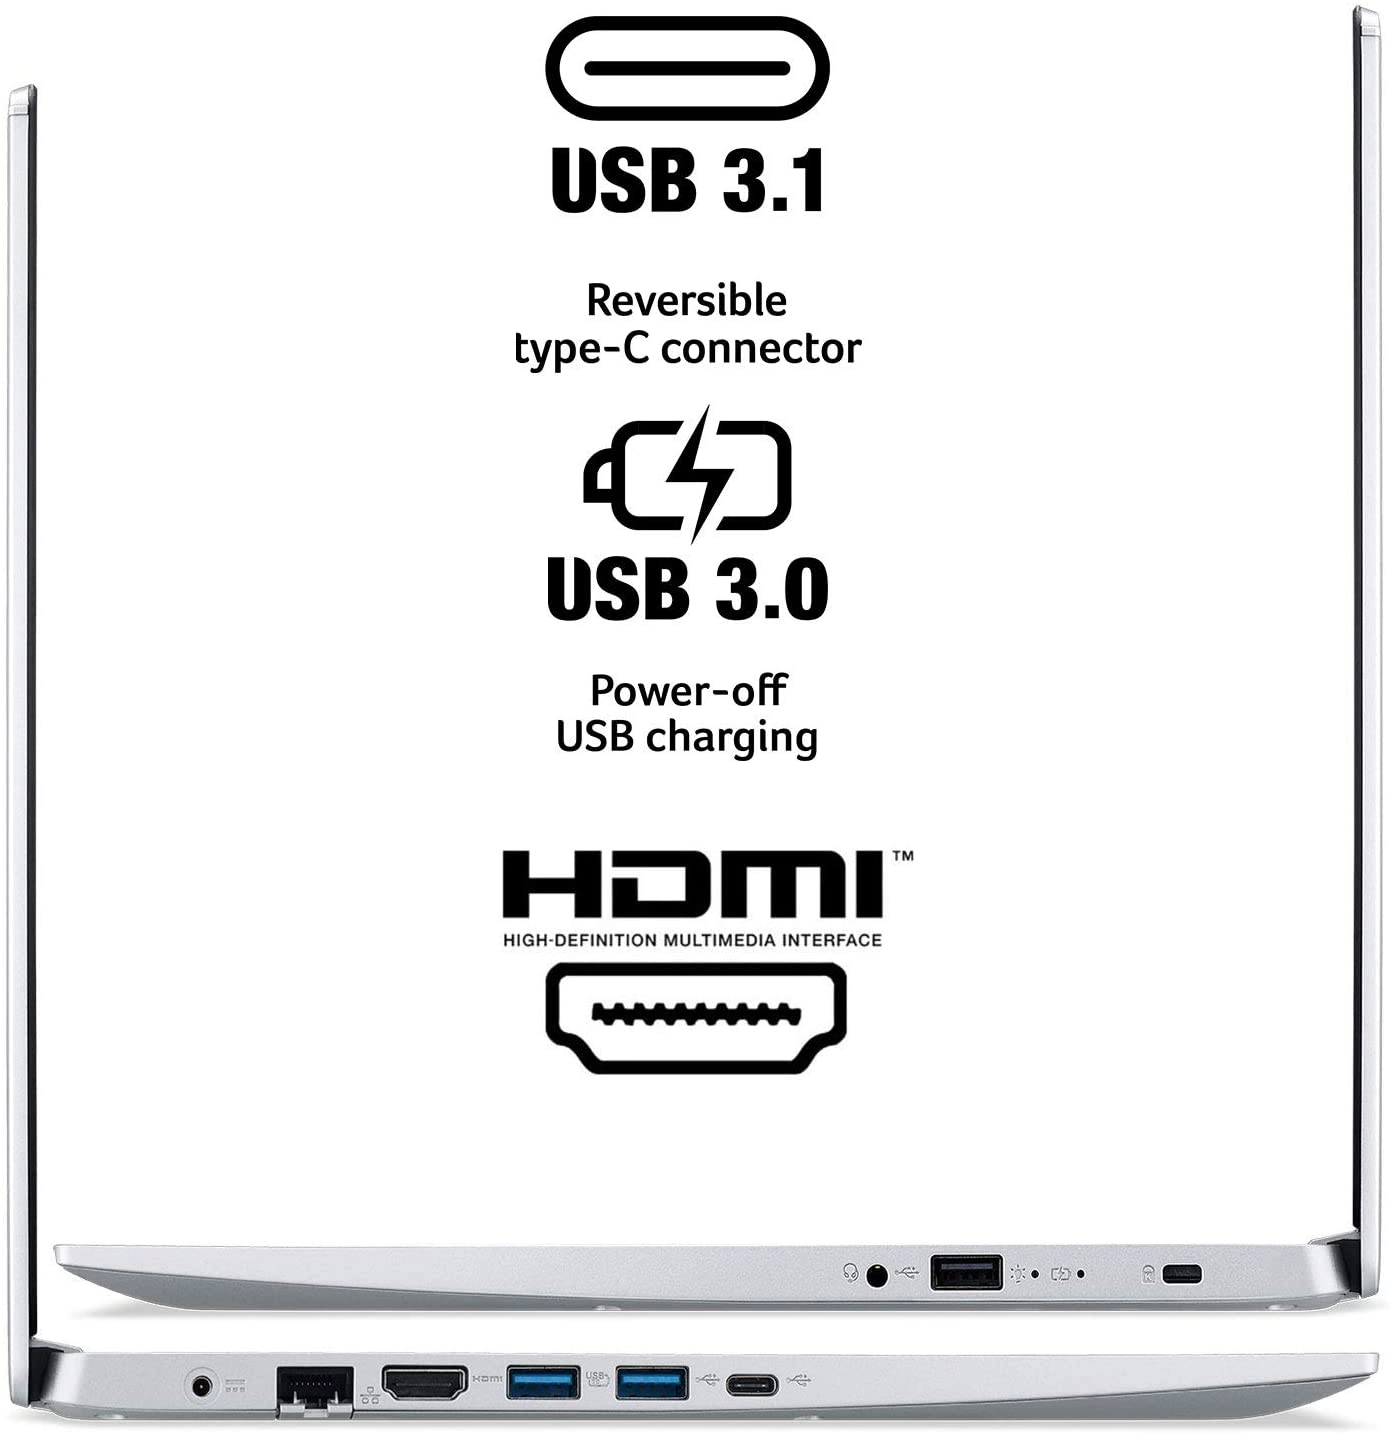 Acer A515-55-56VK laptop image